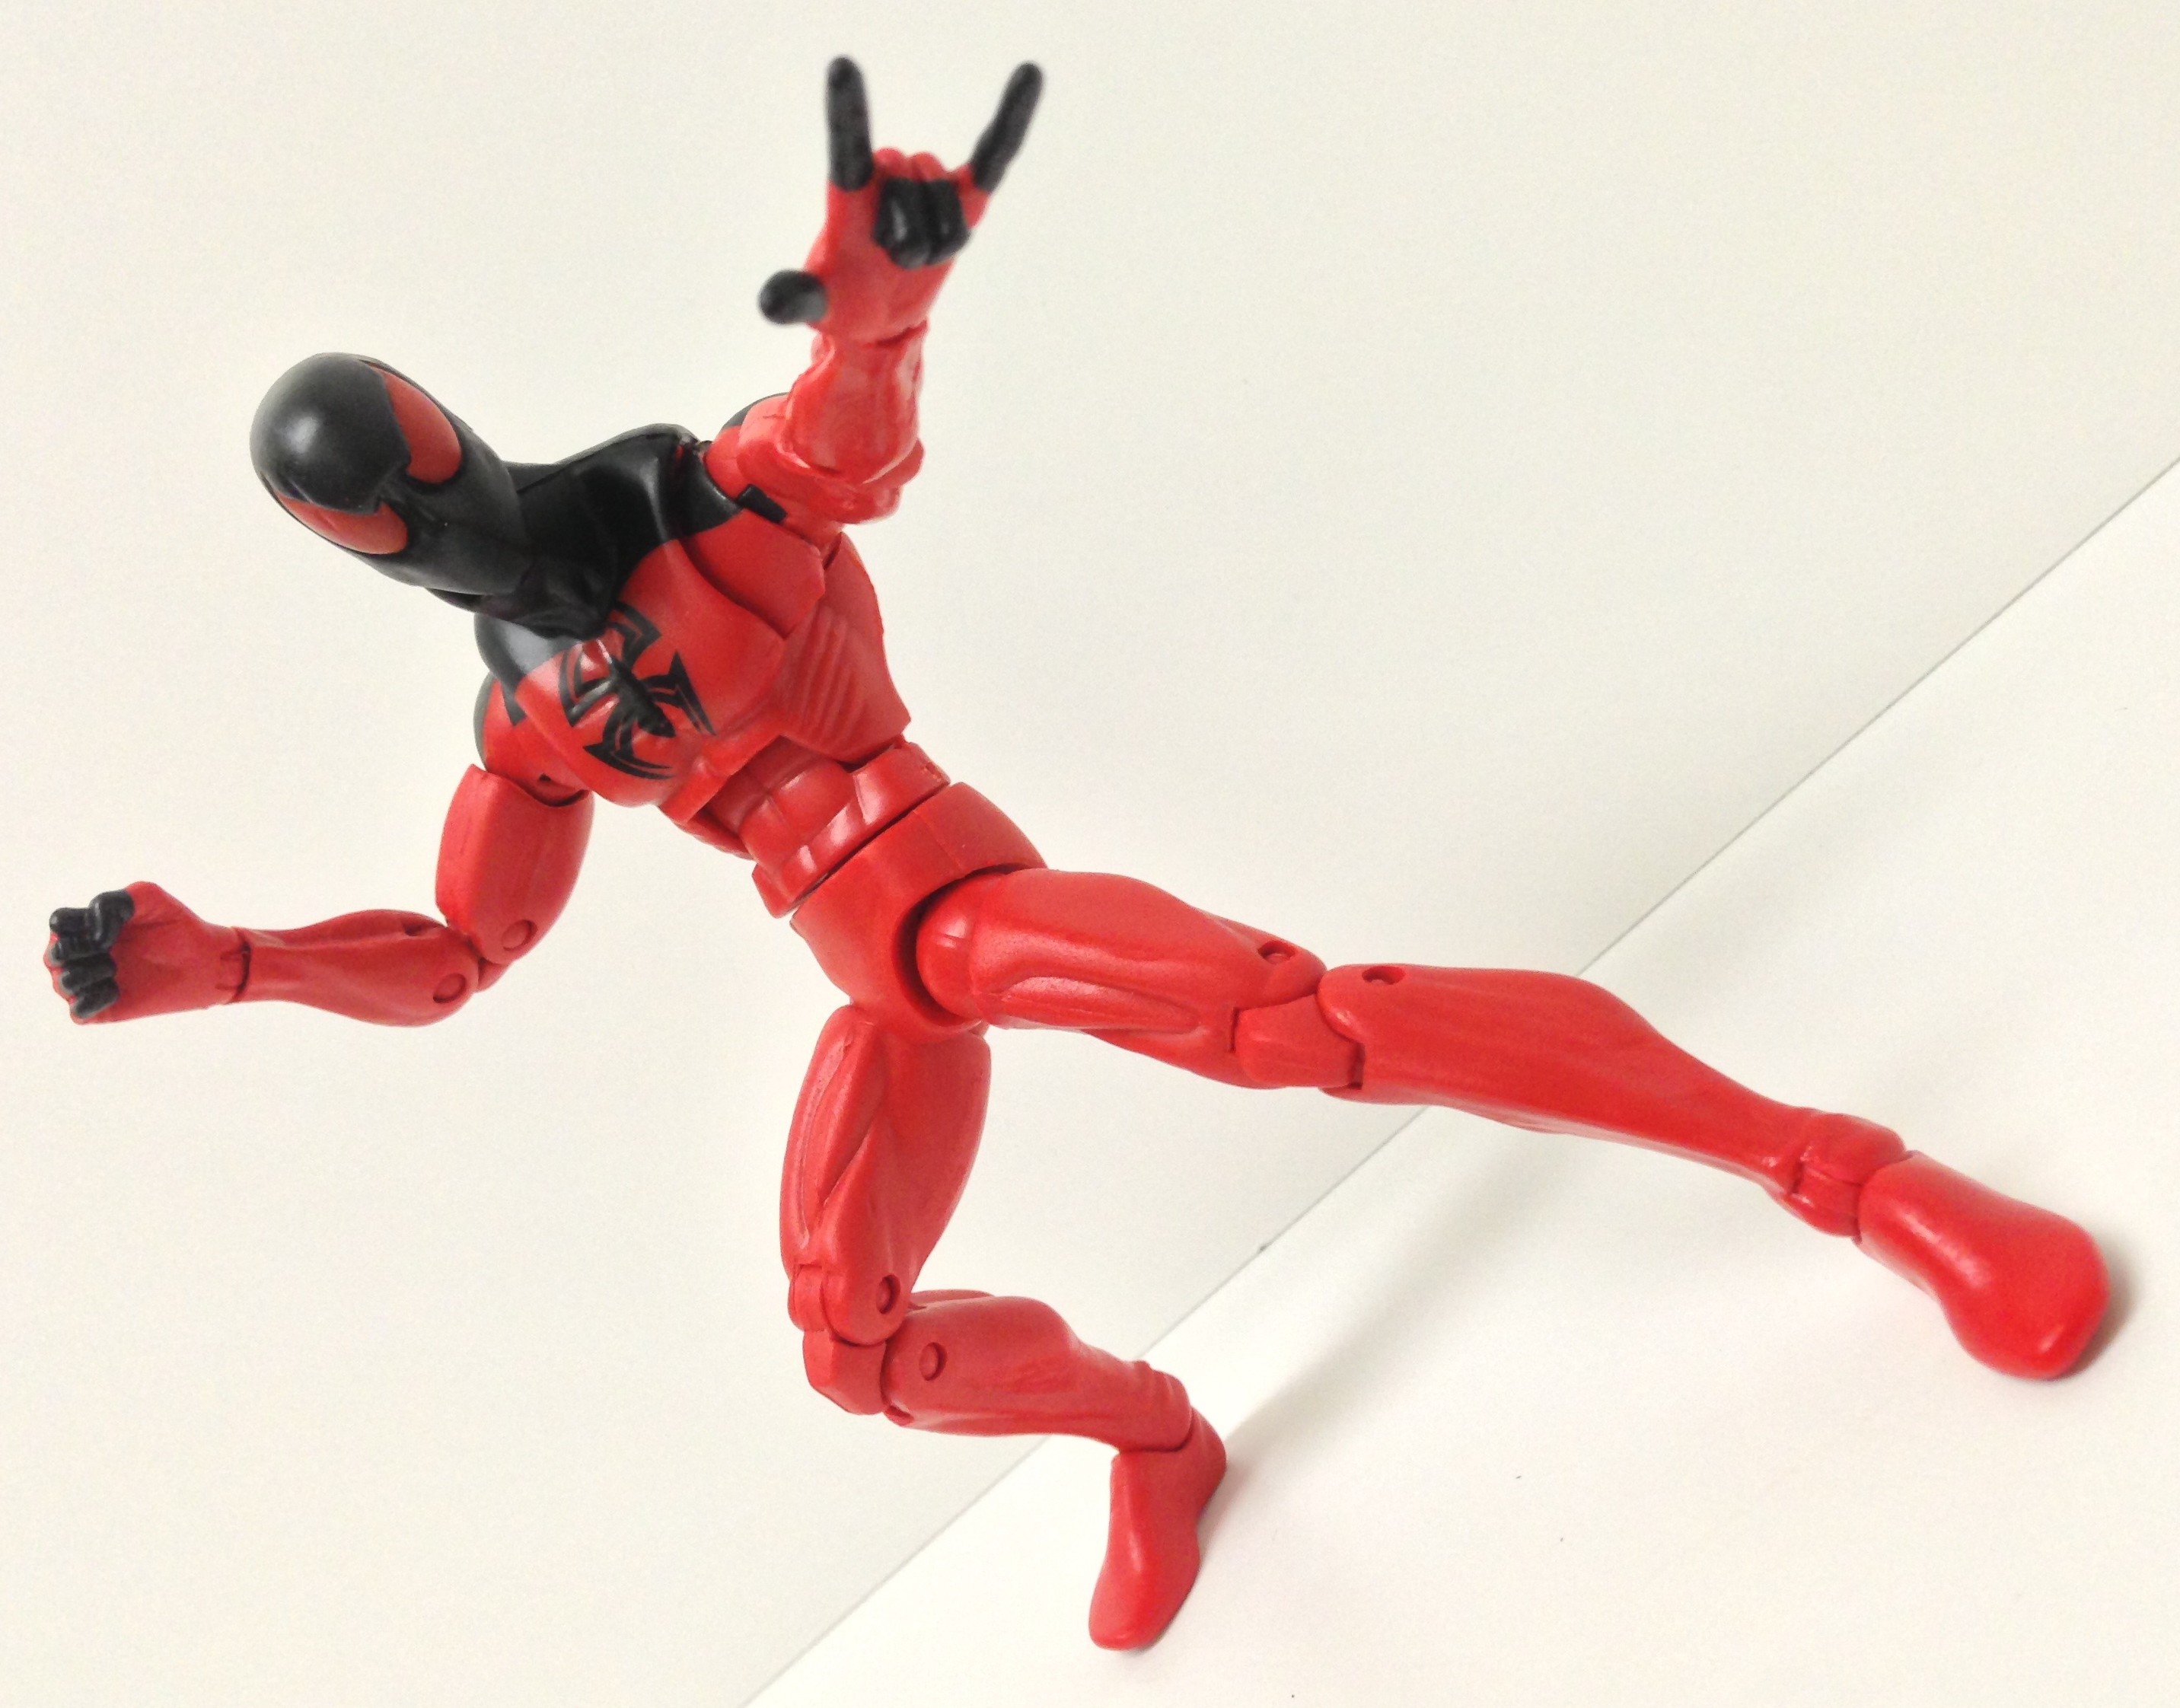 marvel legends scarlet spiderman